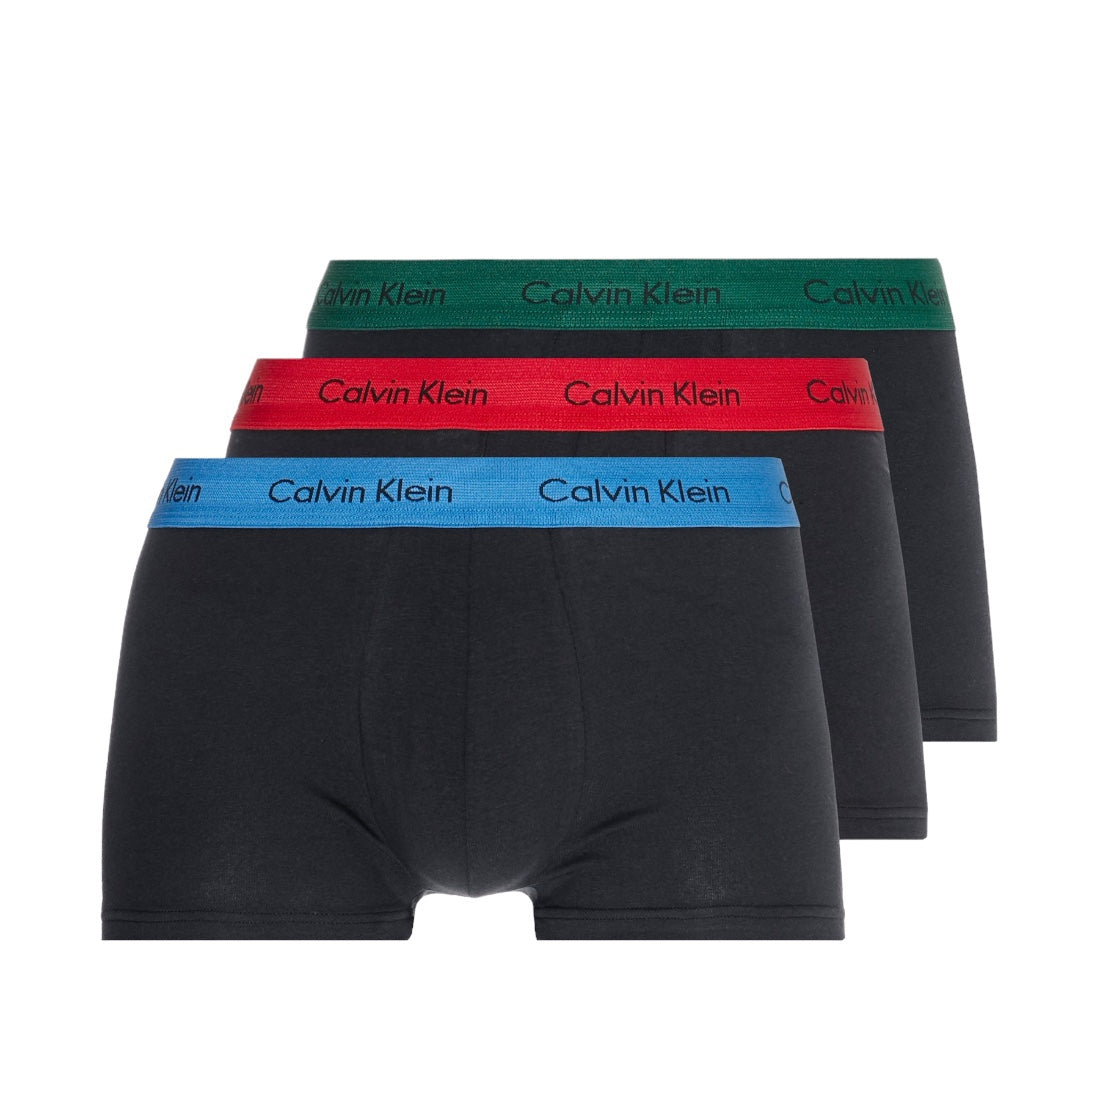 Calvin Klein - Lot de 3 boxers multicolores taille basse